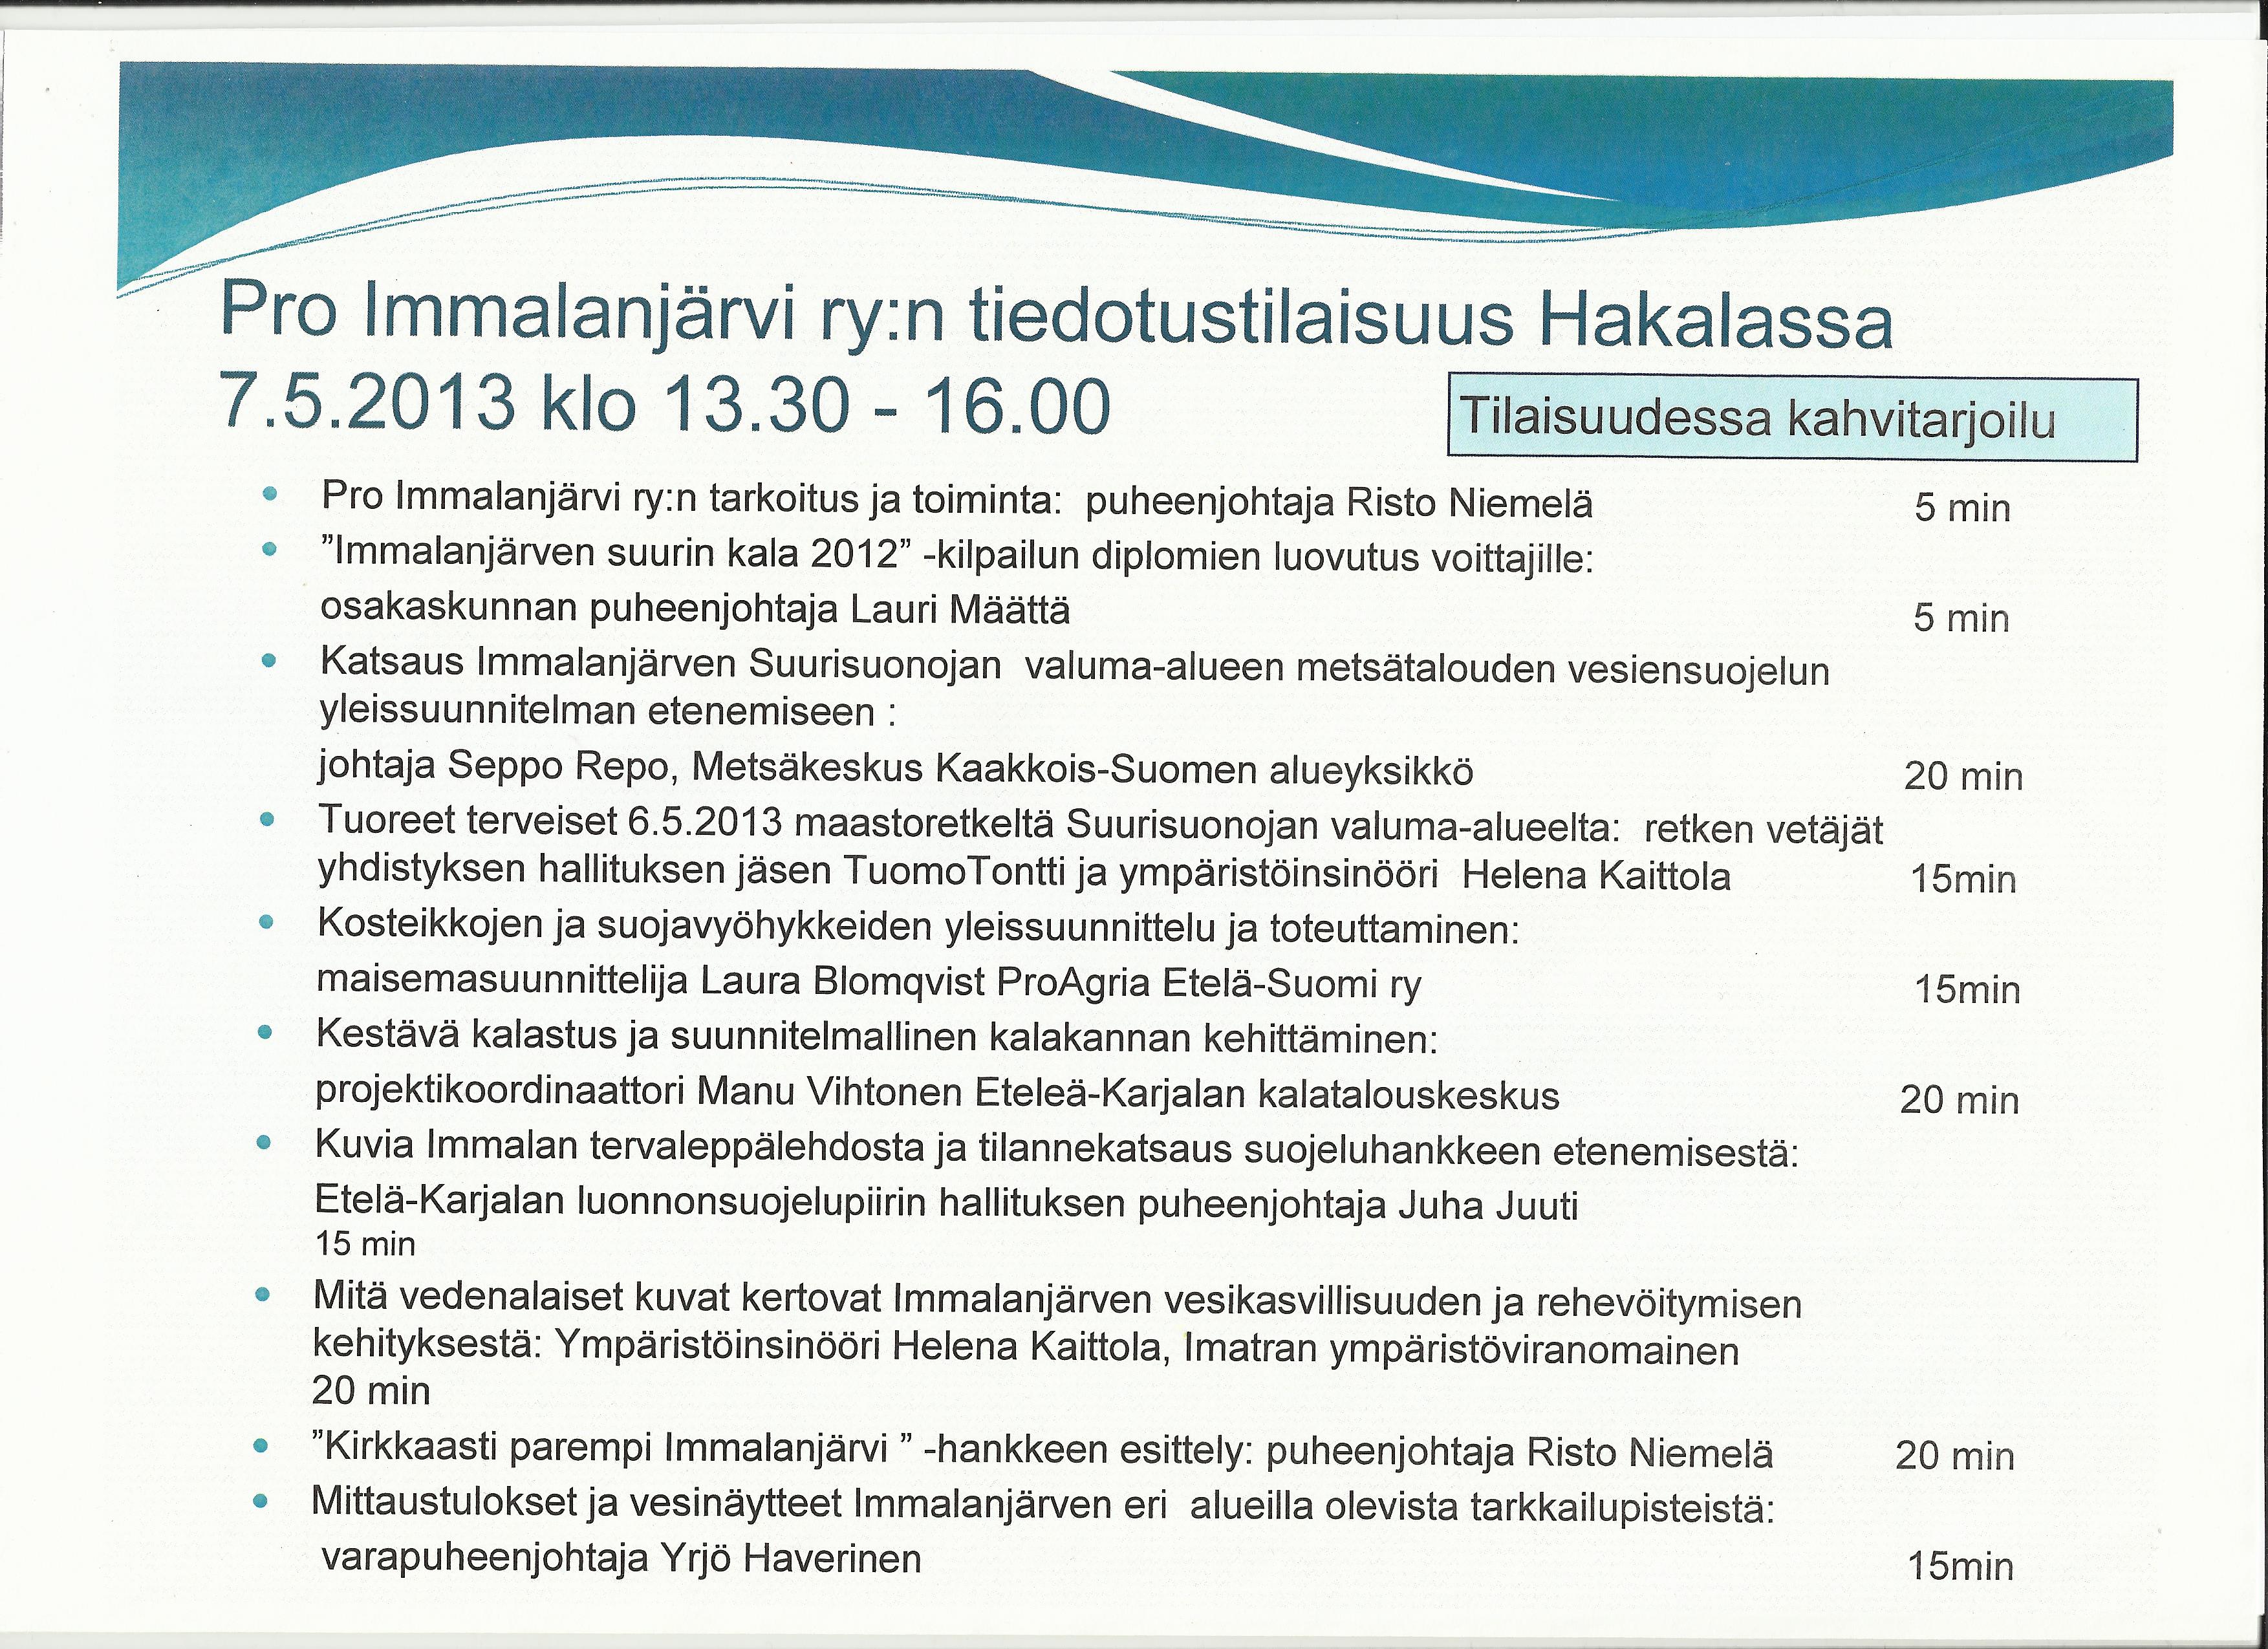 Pro Immalanjärvi ryn tiedotustilaisuus 7.5.2013